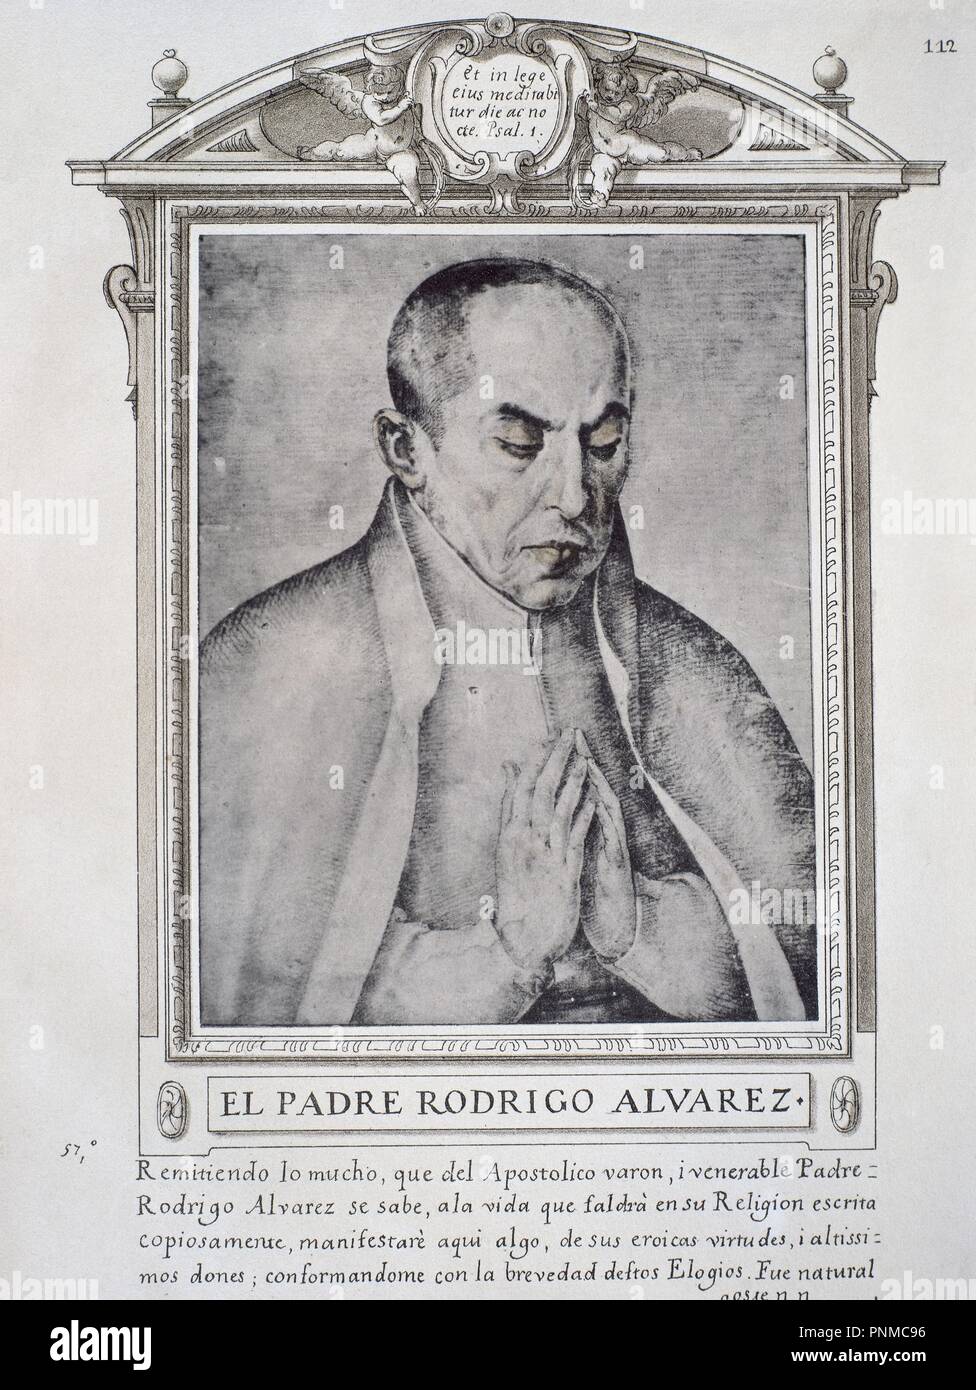 RODRIGO ALVAREZ - LIBRO DE RETRATOS DE ILUSTRES Y MEMORABLES VARONES - 1599. Author: PACHECO, FRANCISCO. Location: BIBLIOTECA NACIONAL-COLECCION. MADRID. SPAIN. Stock Photo